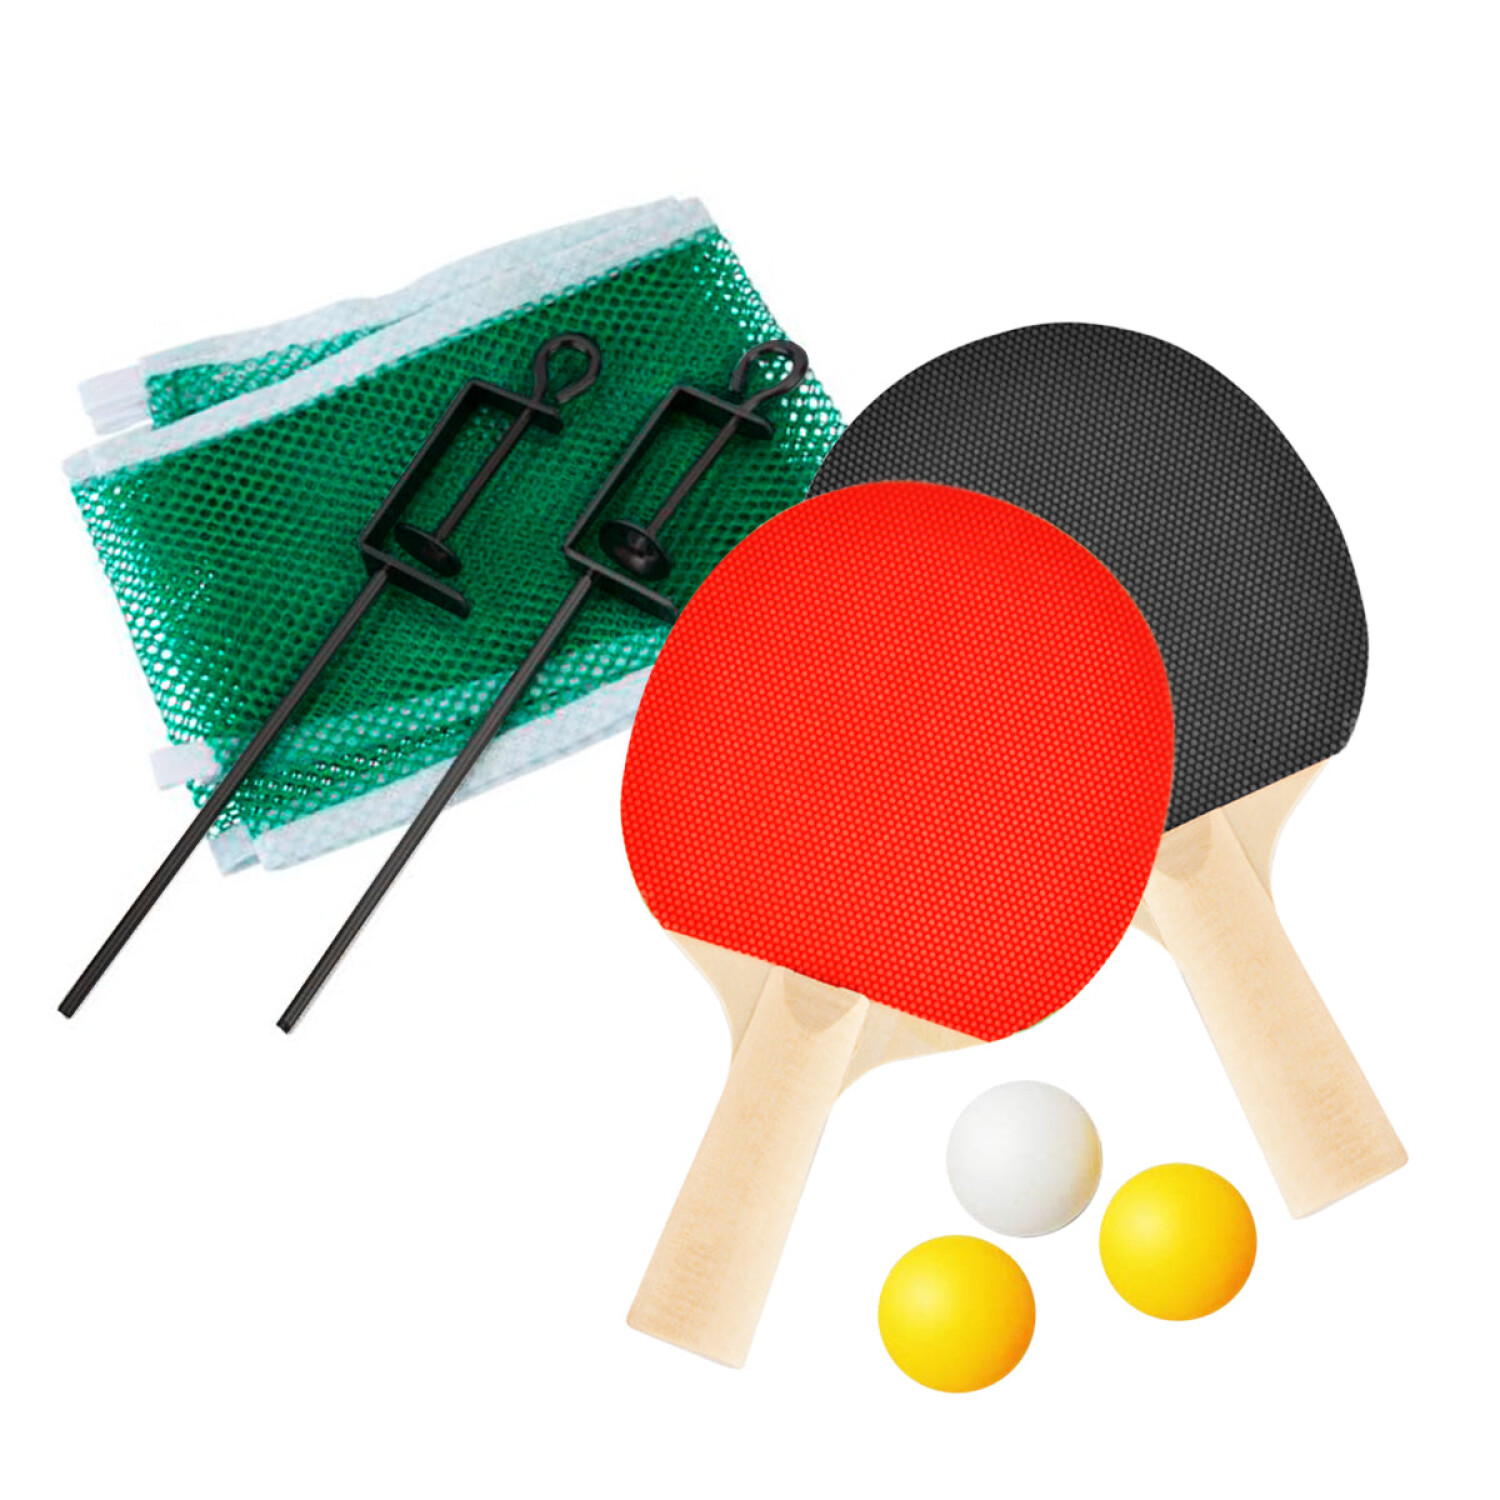 IntegraFun Juego de paletas de ping pong profesional con red de ping pong,  abrazaderas de soporte, bolas de ping pong de 3 estrellas, estuche de